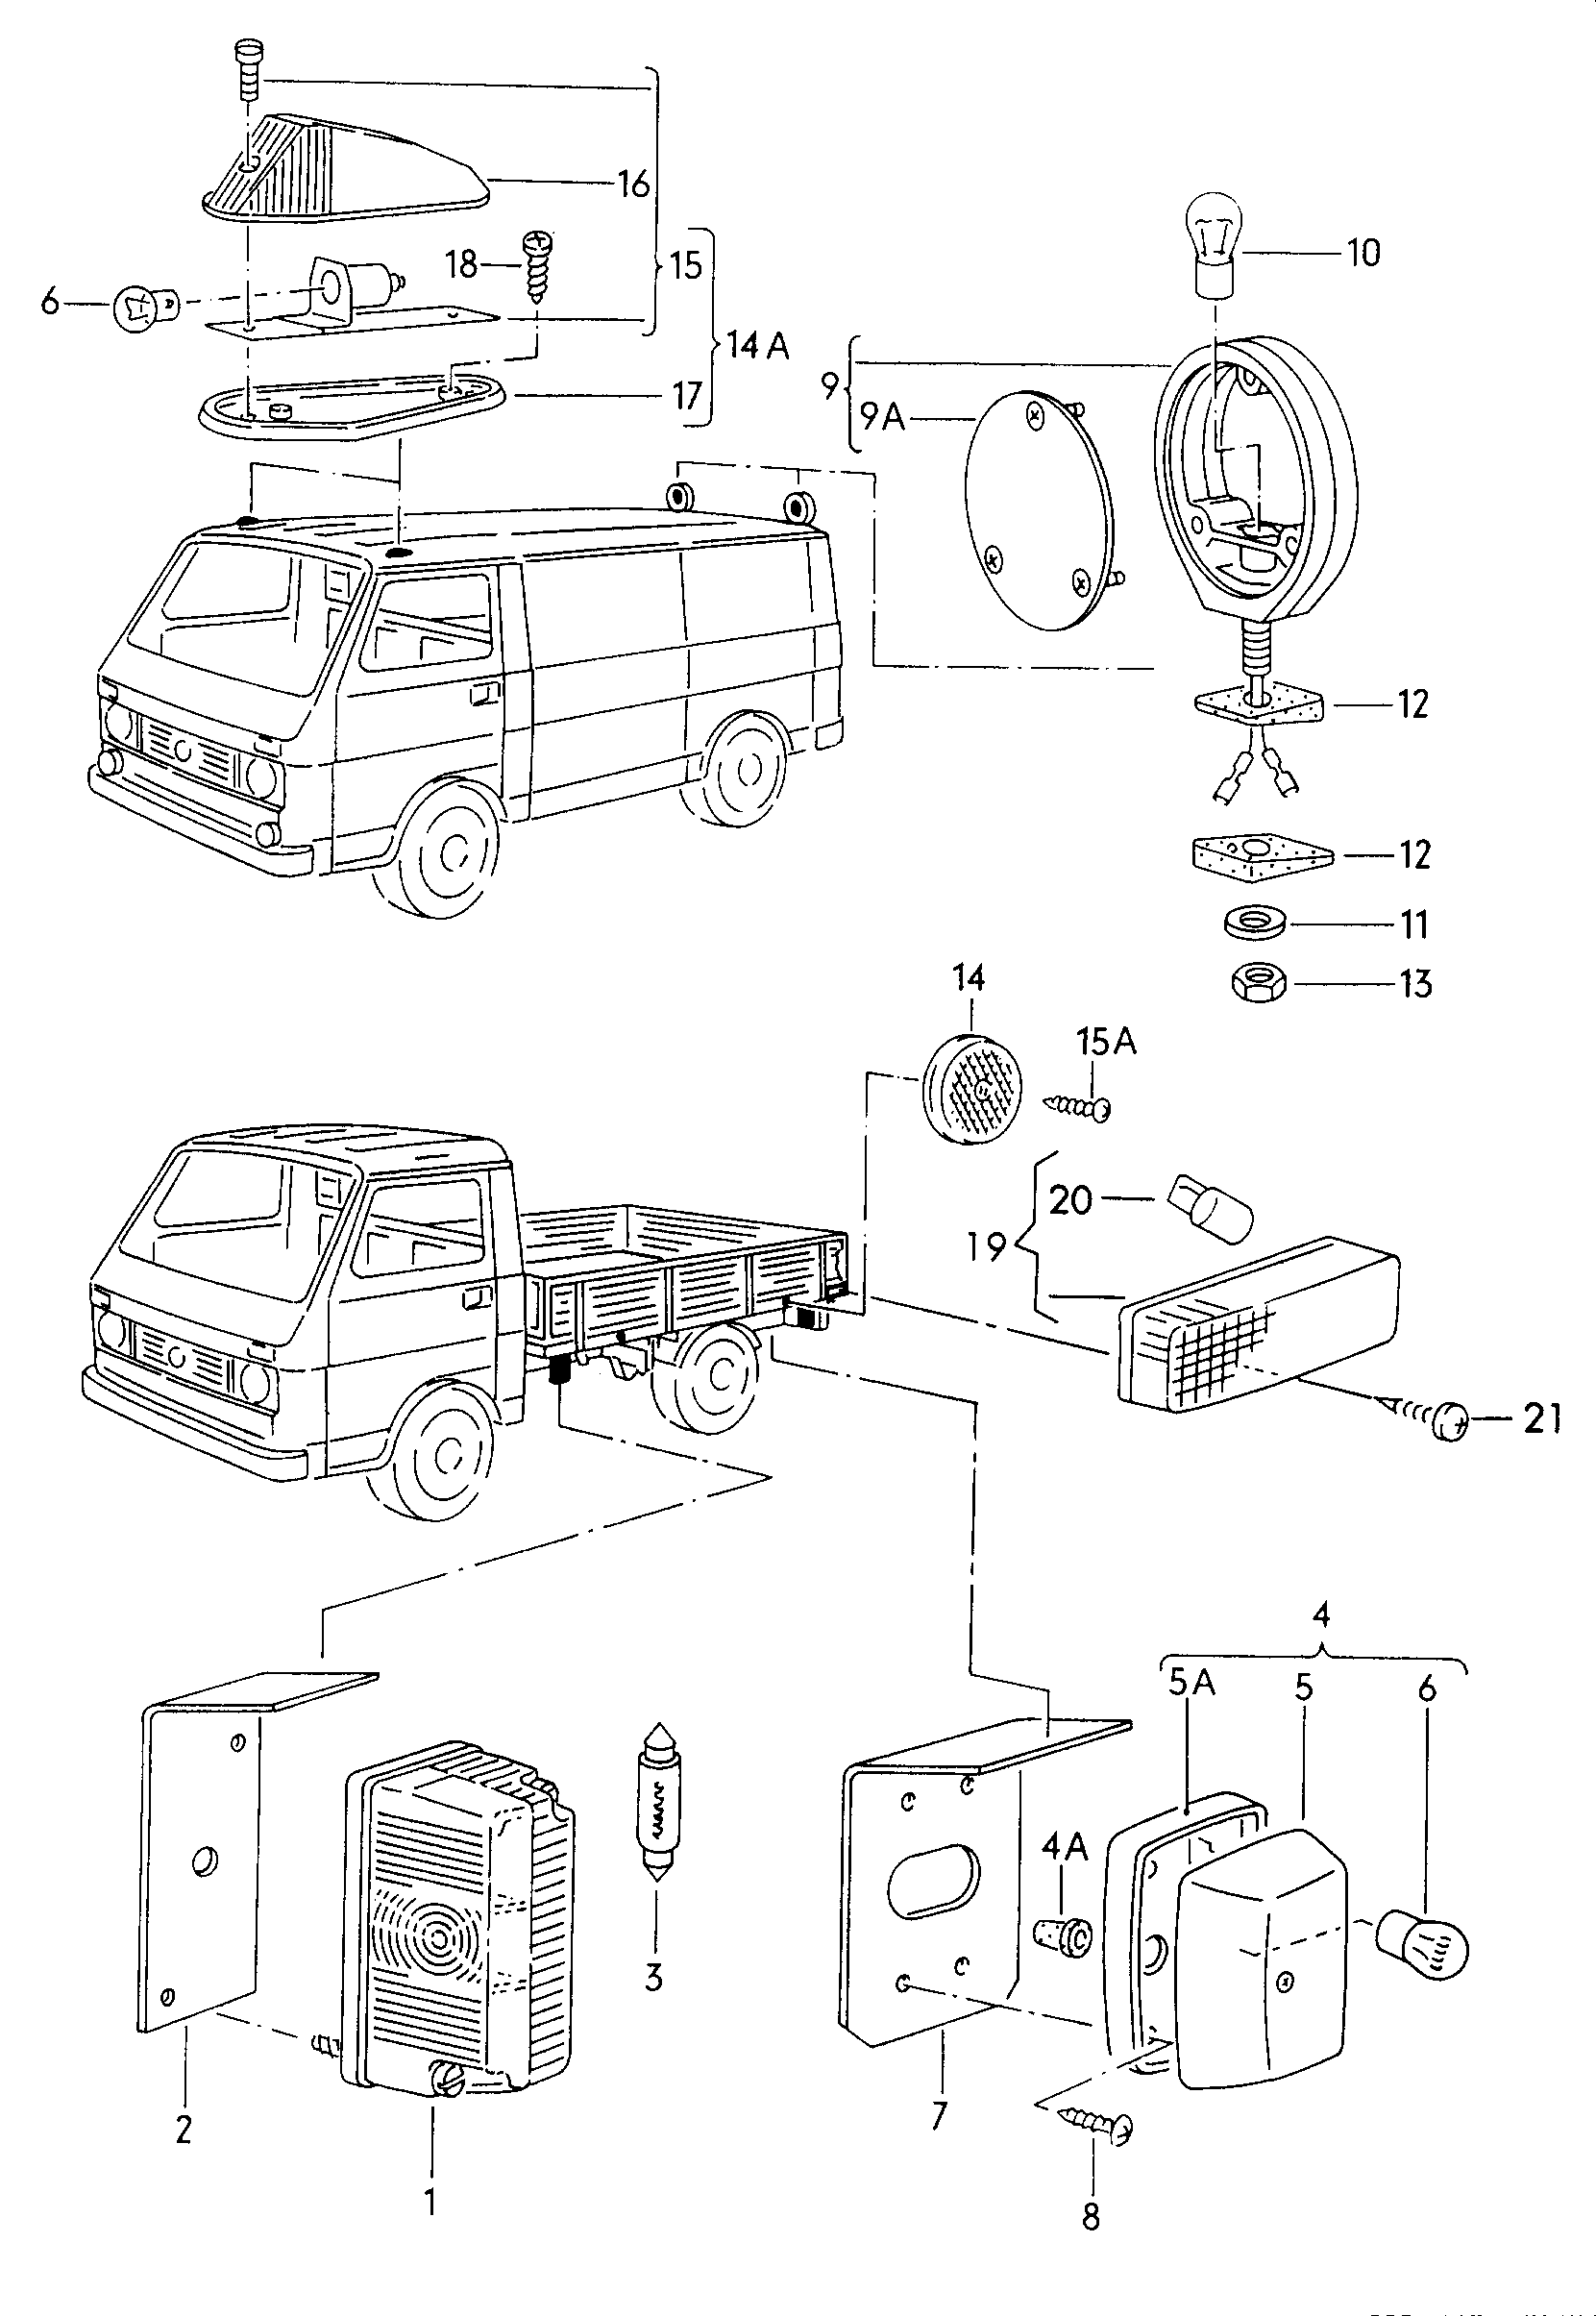 Габаритный фонарьУказатели поворота на крышеБоковой габаритный огонь  - LT, LT 4x4 - lt